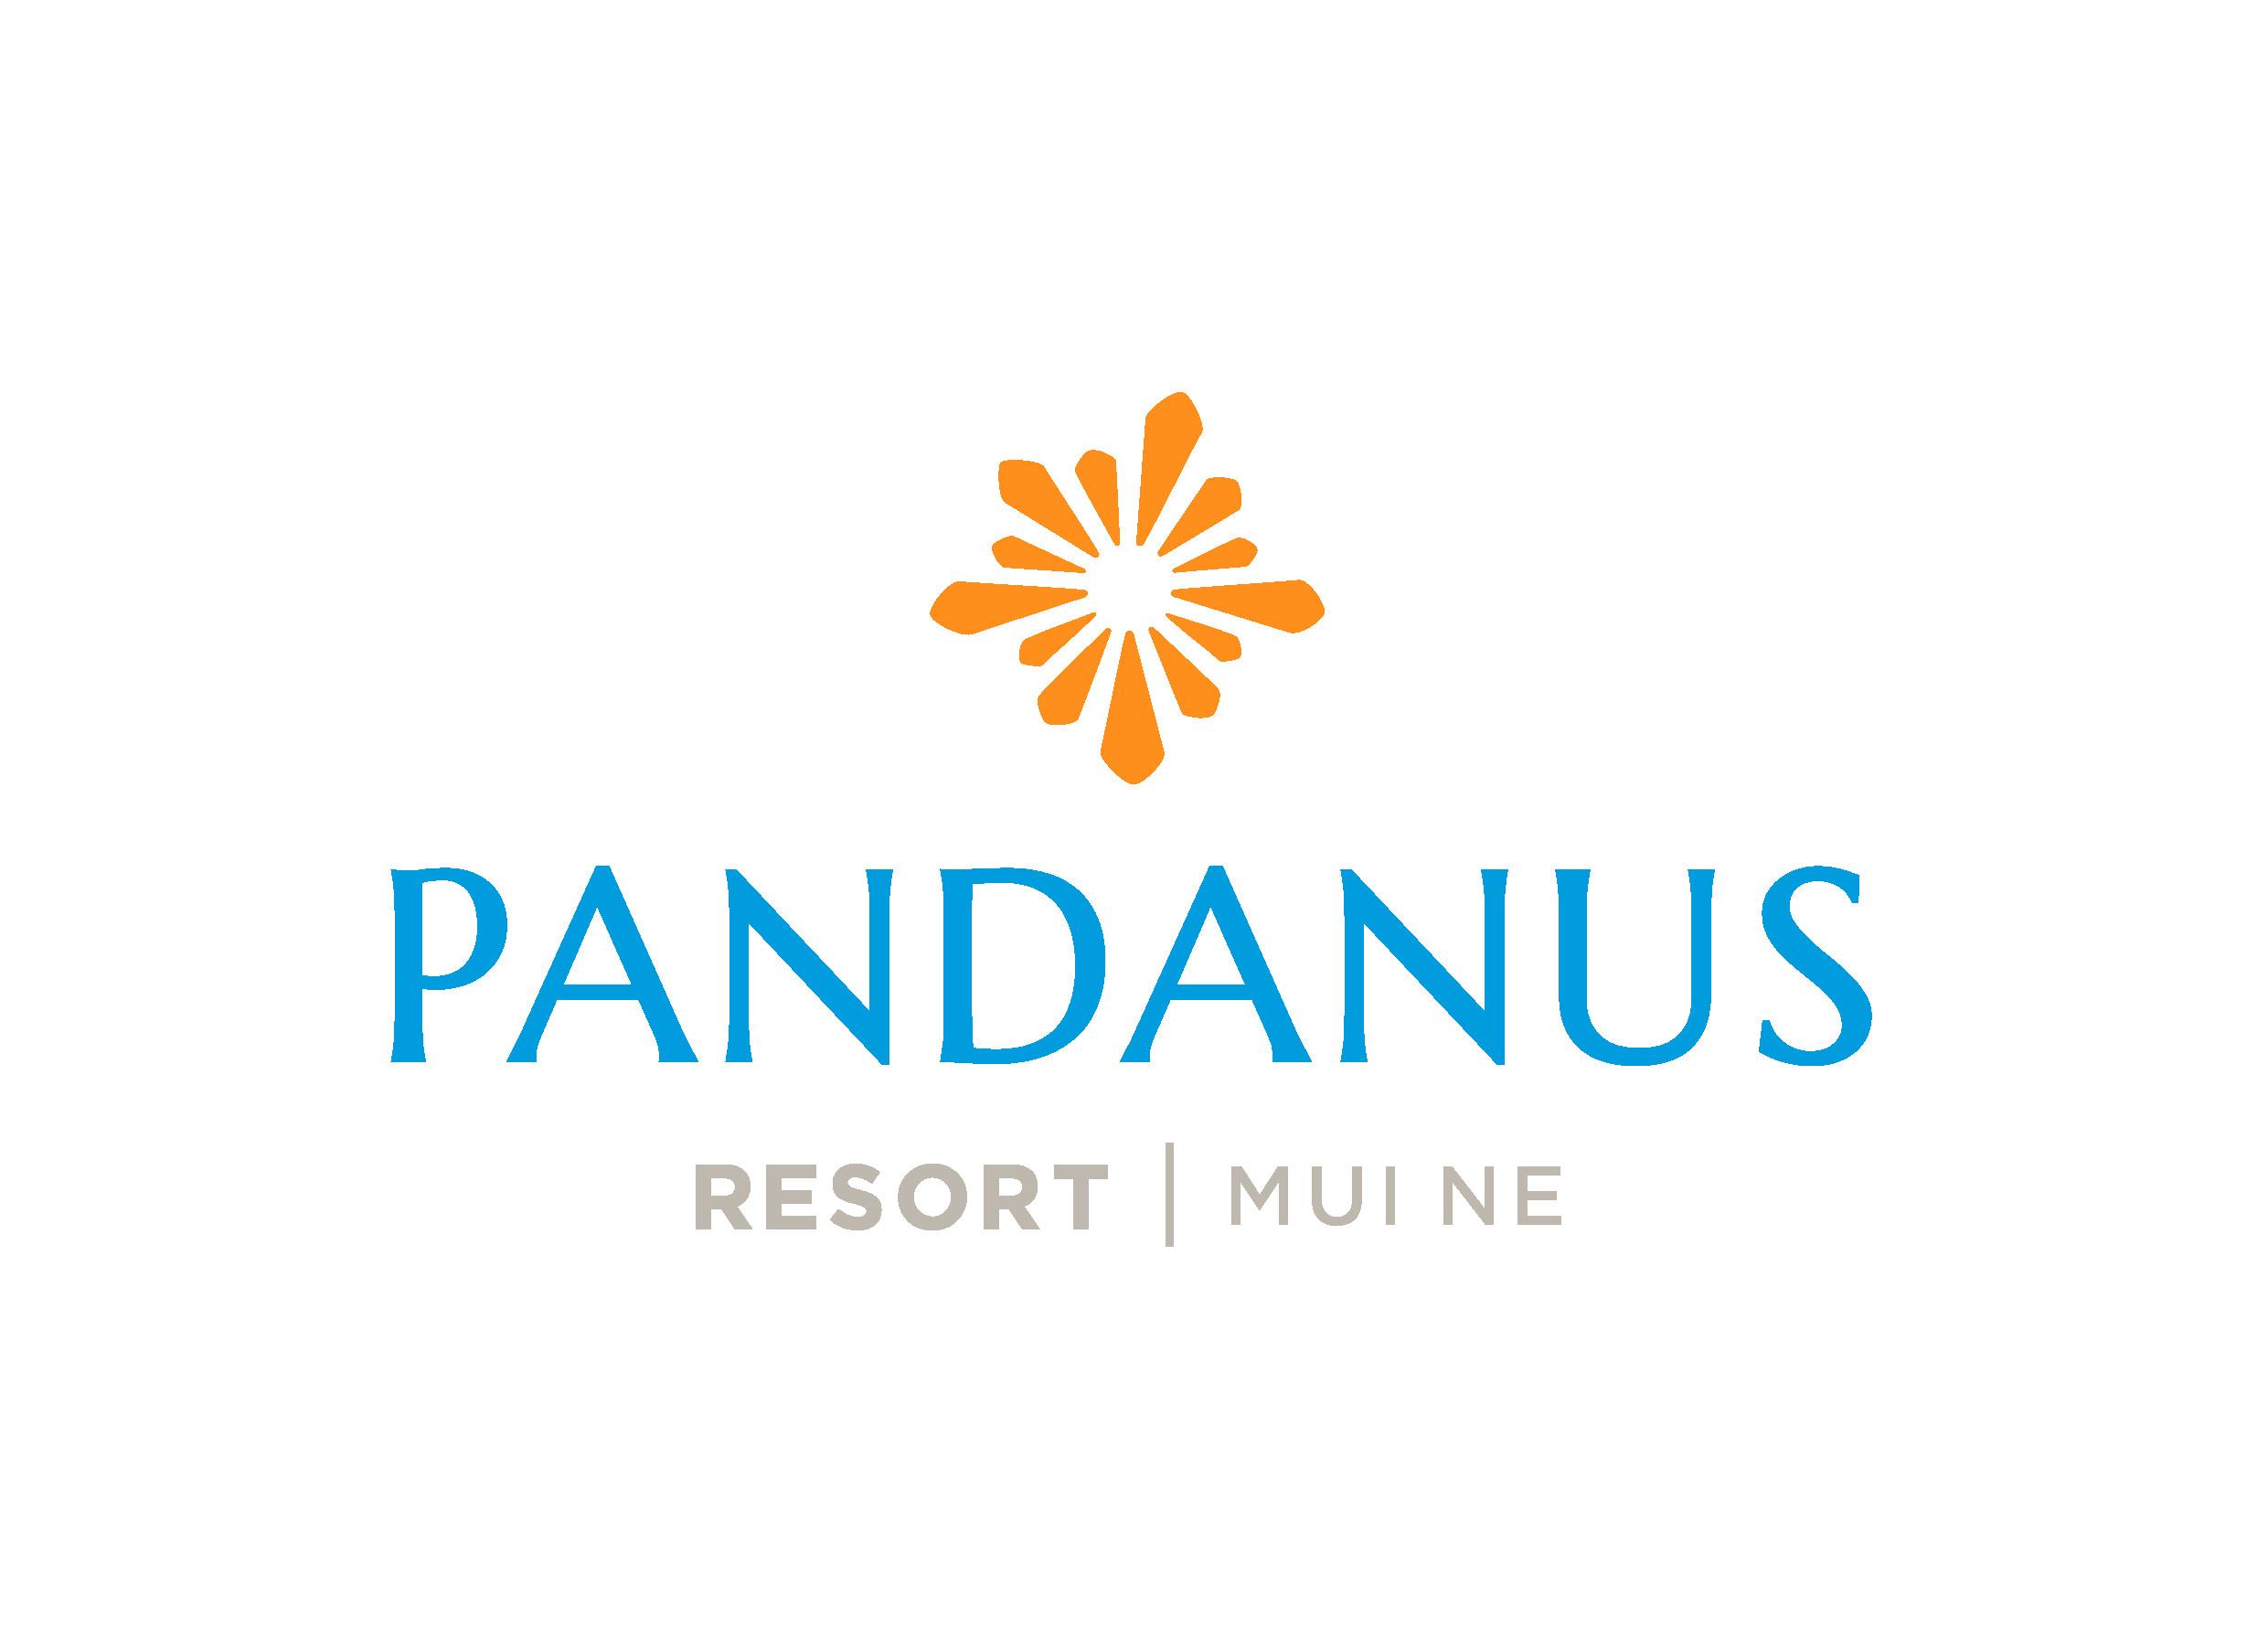 PANDANUS RESORT